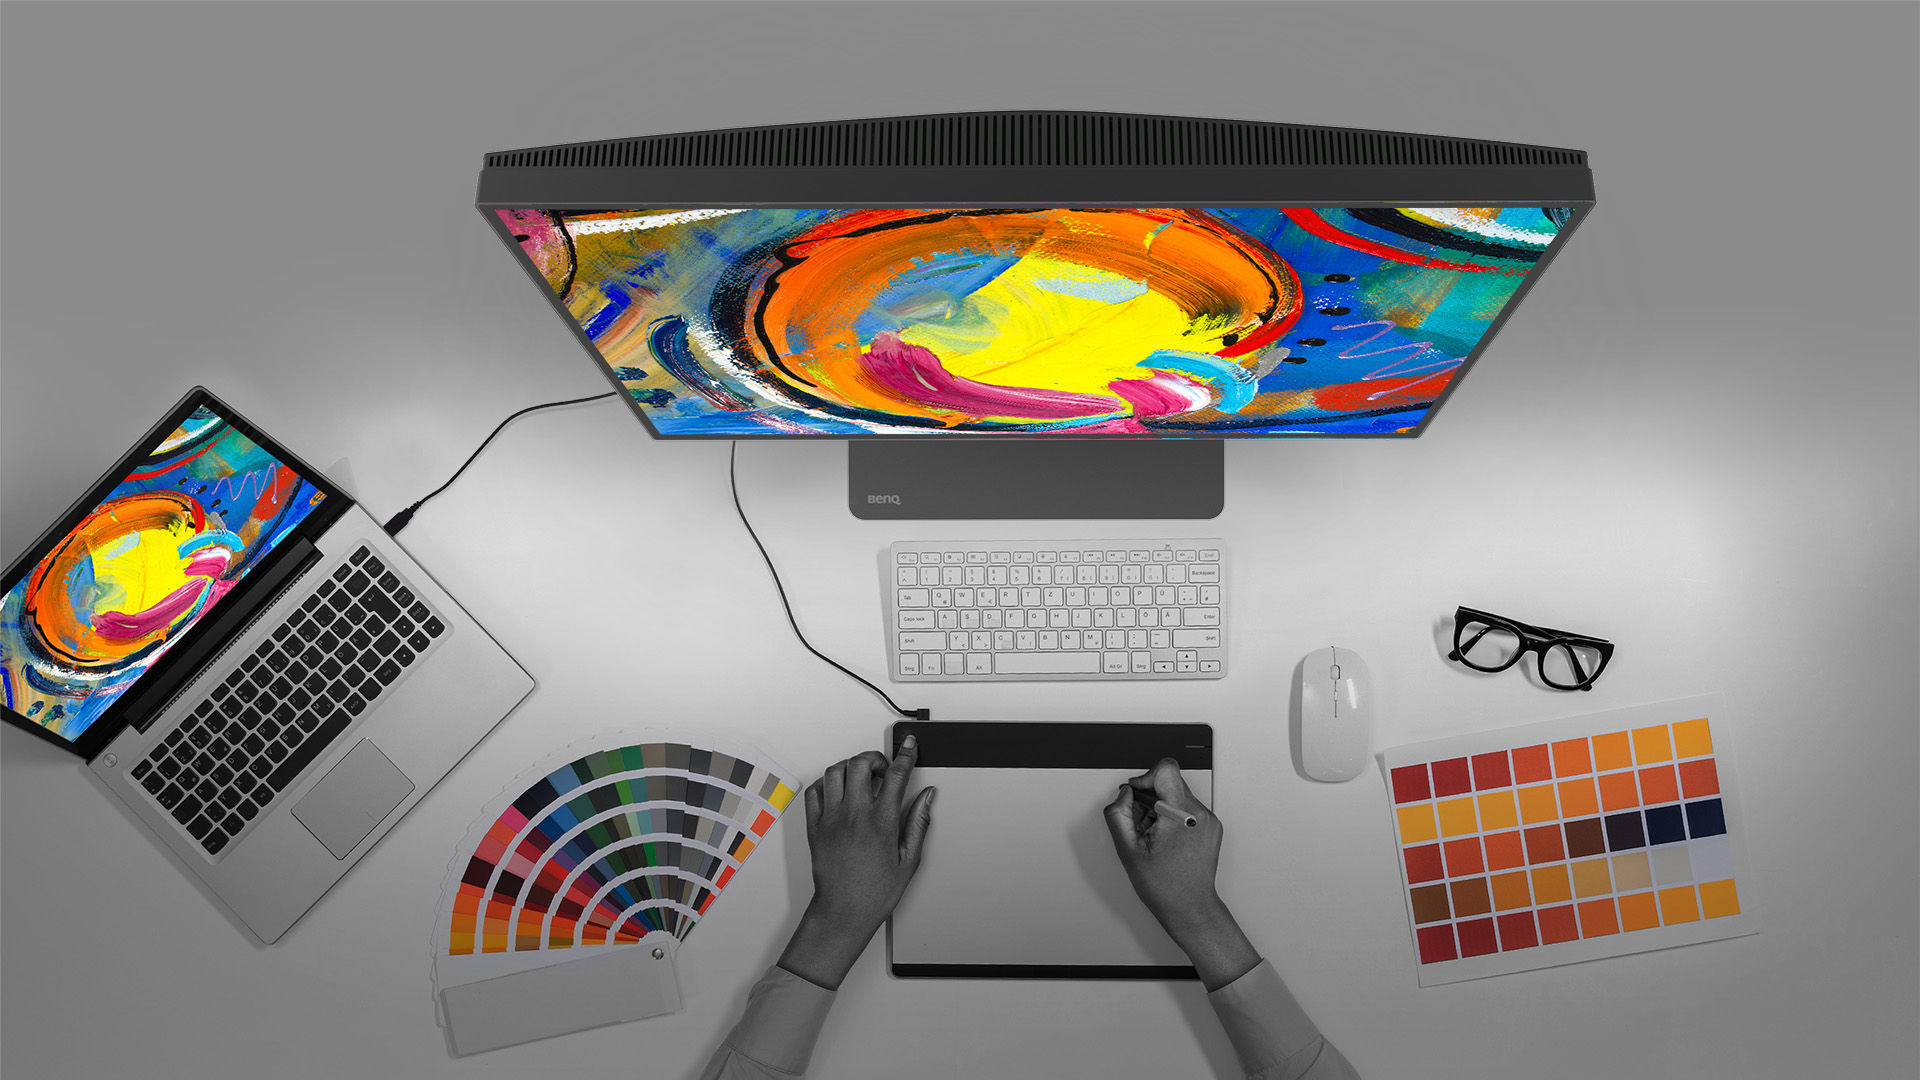 Màn hình BenQ DesignVue với các chế độ màu đa dạng cho bạn thỏa sức sáng tạo